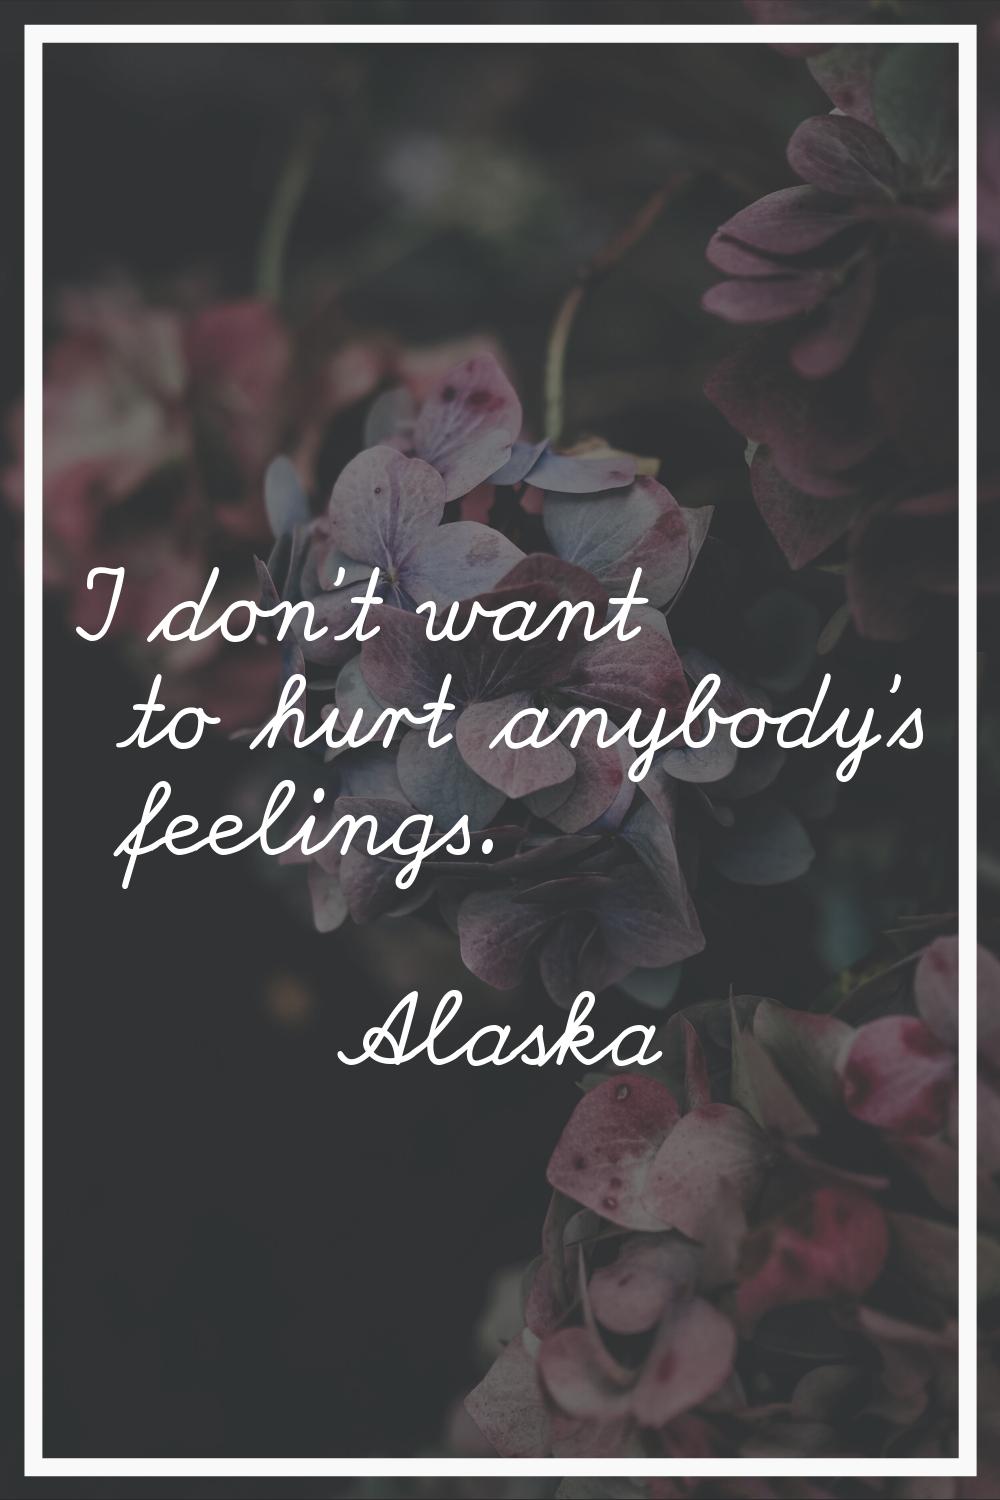 I don't want to hurt anybody's feelings.